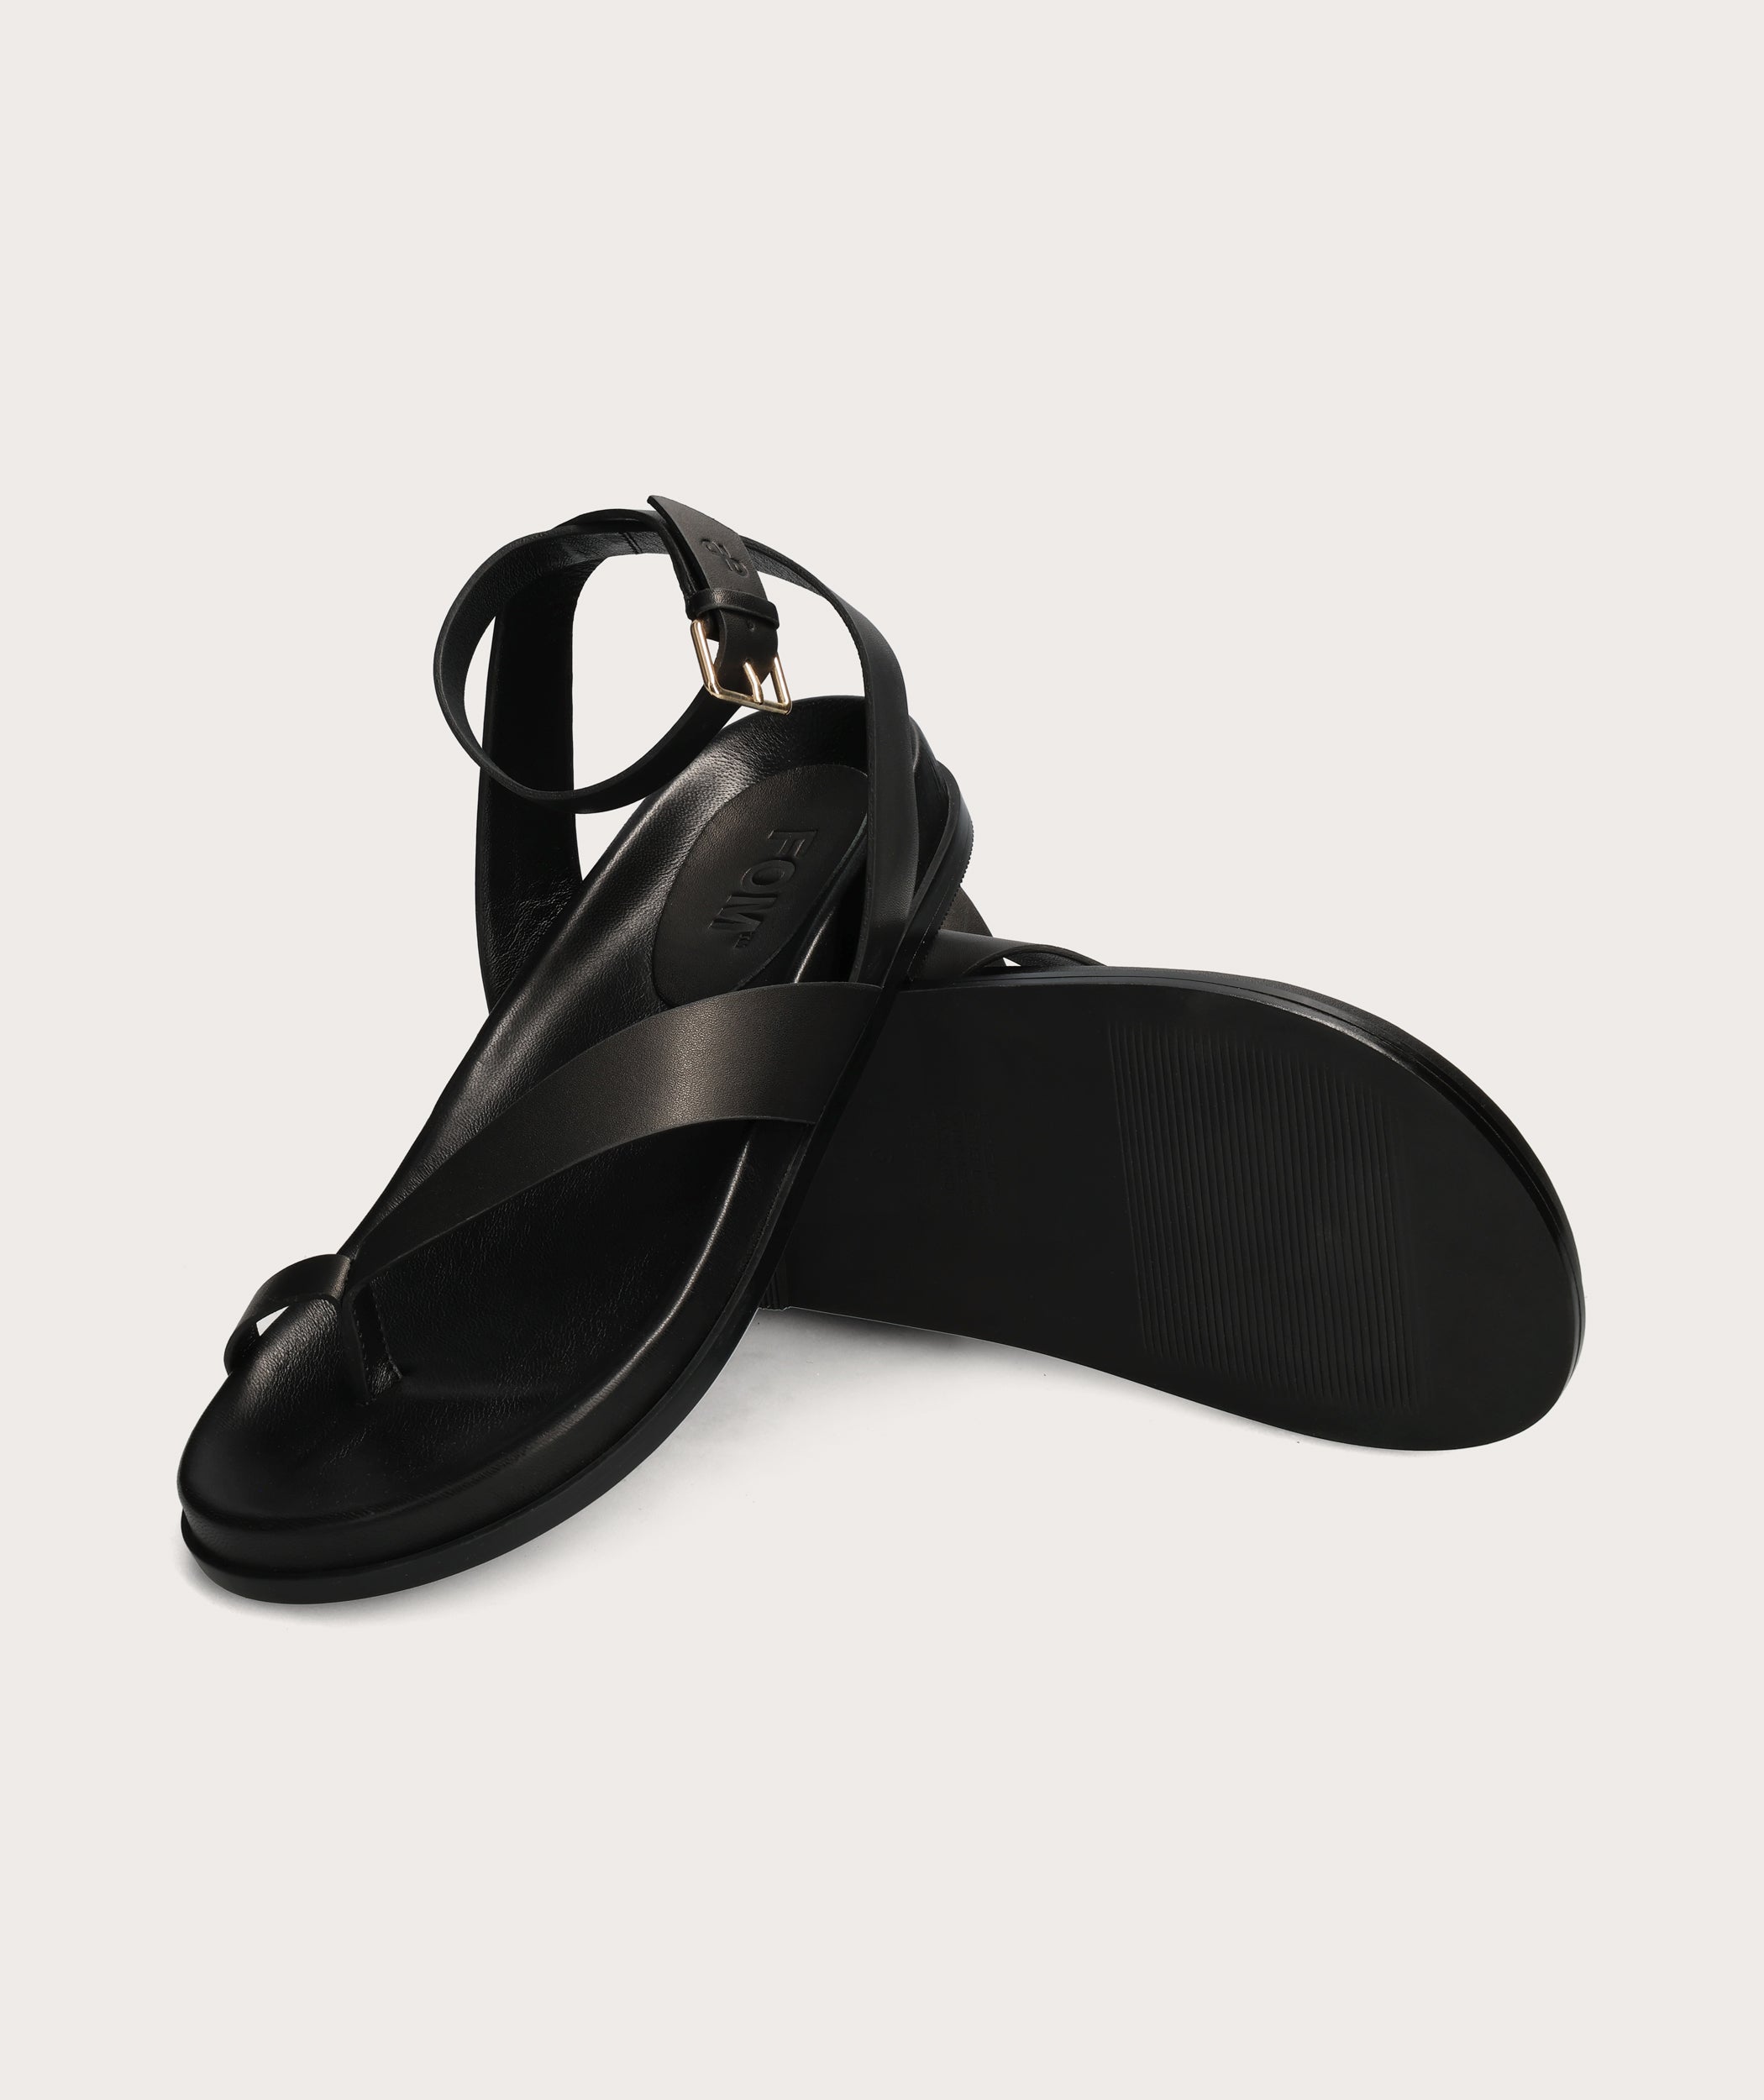 Ladies Toe Loop Sandal - Black